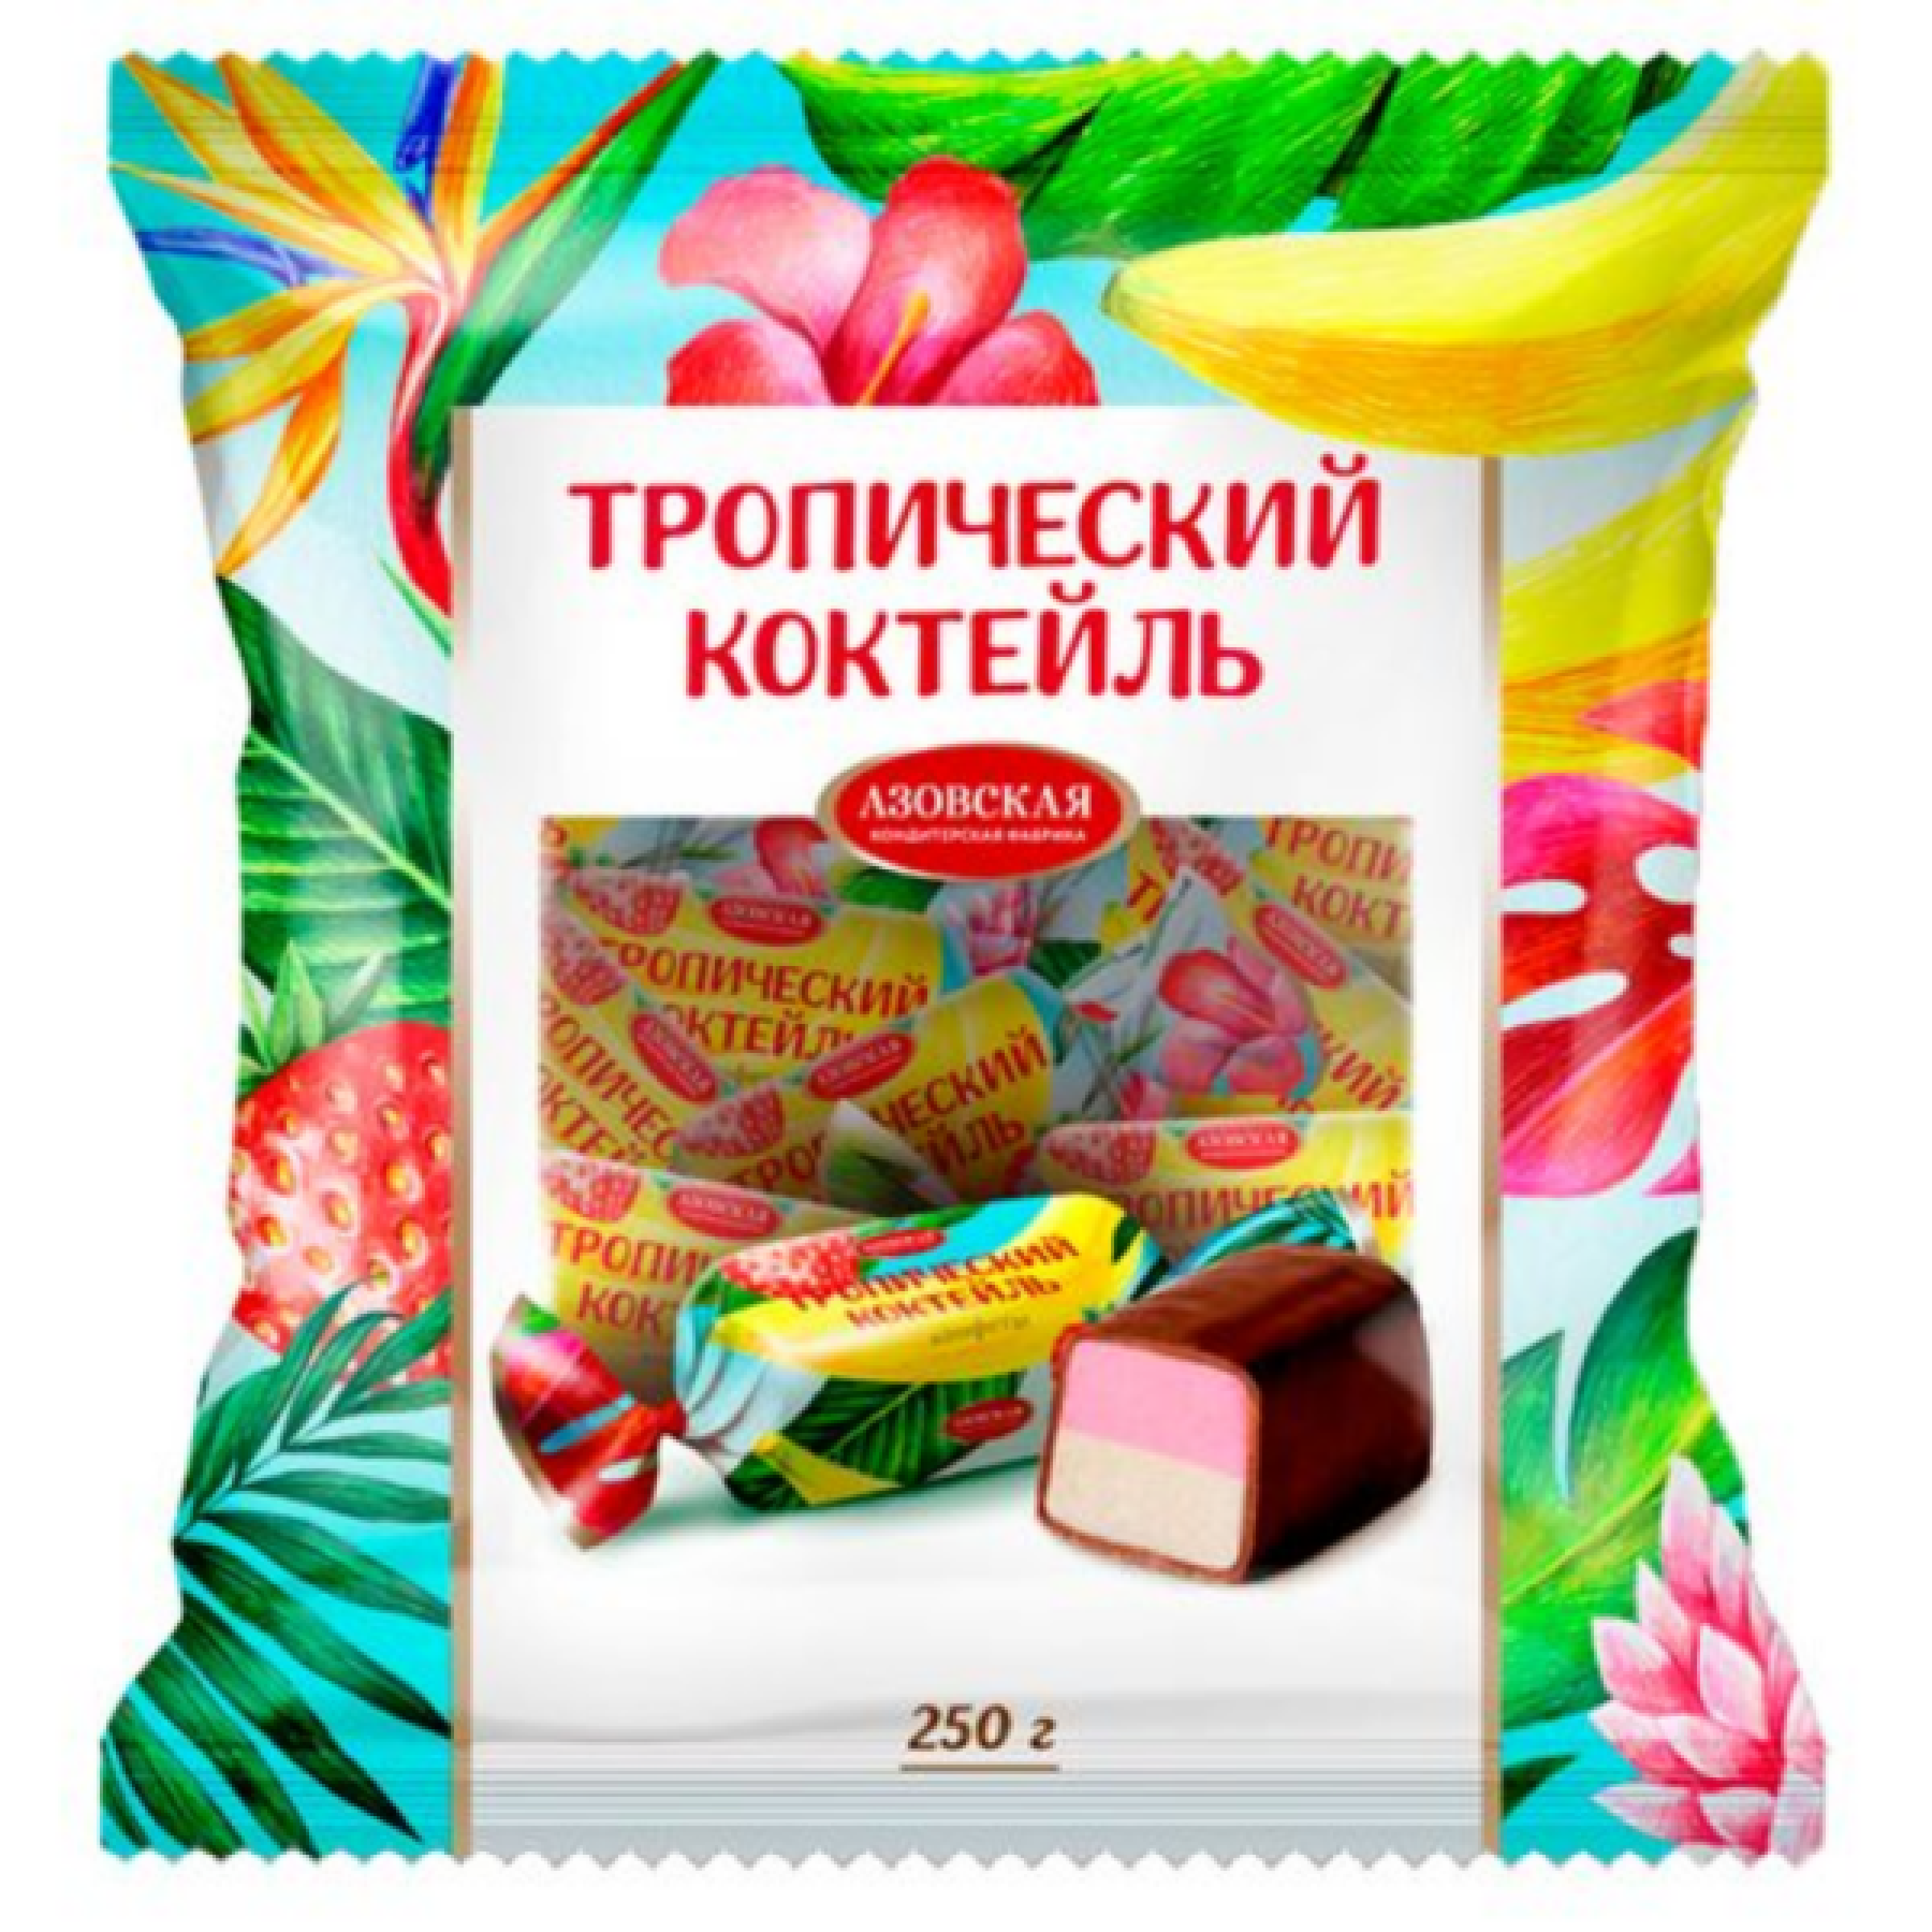 Глазированные помадные конфеты Тропический коктейль 250 г Азовская кондитерская фабрика